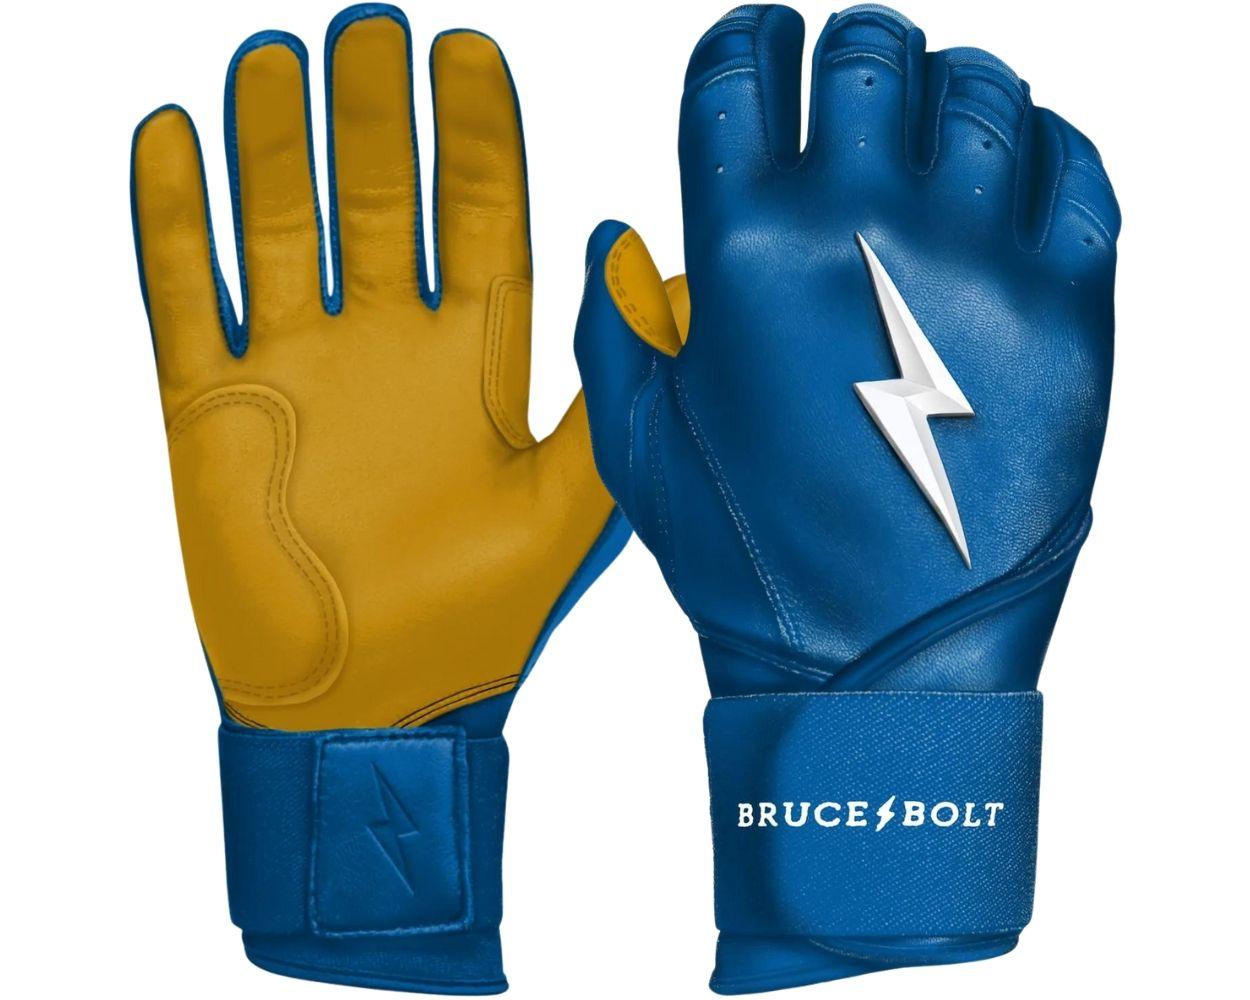 Bruce bolt baseball gloves